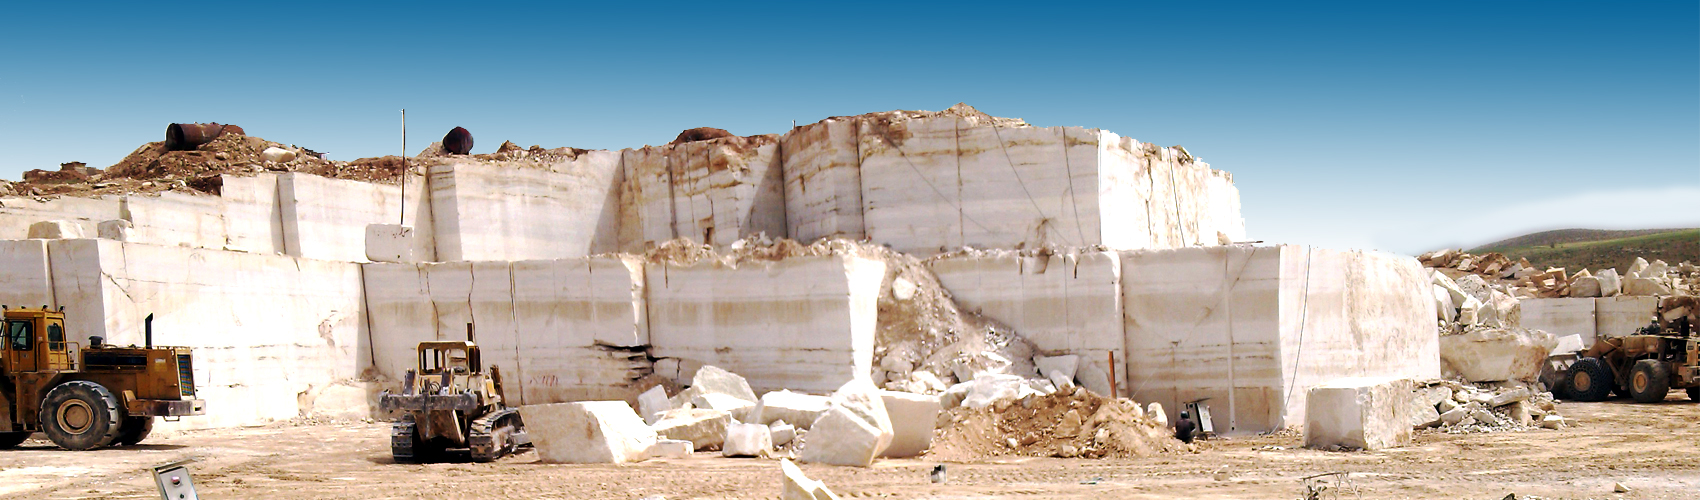 تصویر معدن سنگ مرمر شرکت اکتشافات میکائیل